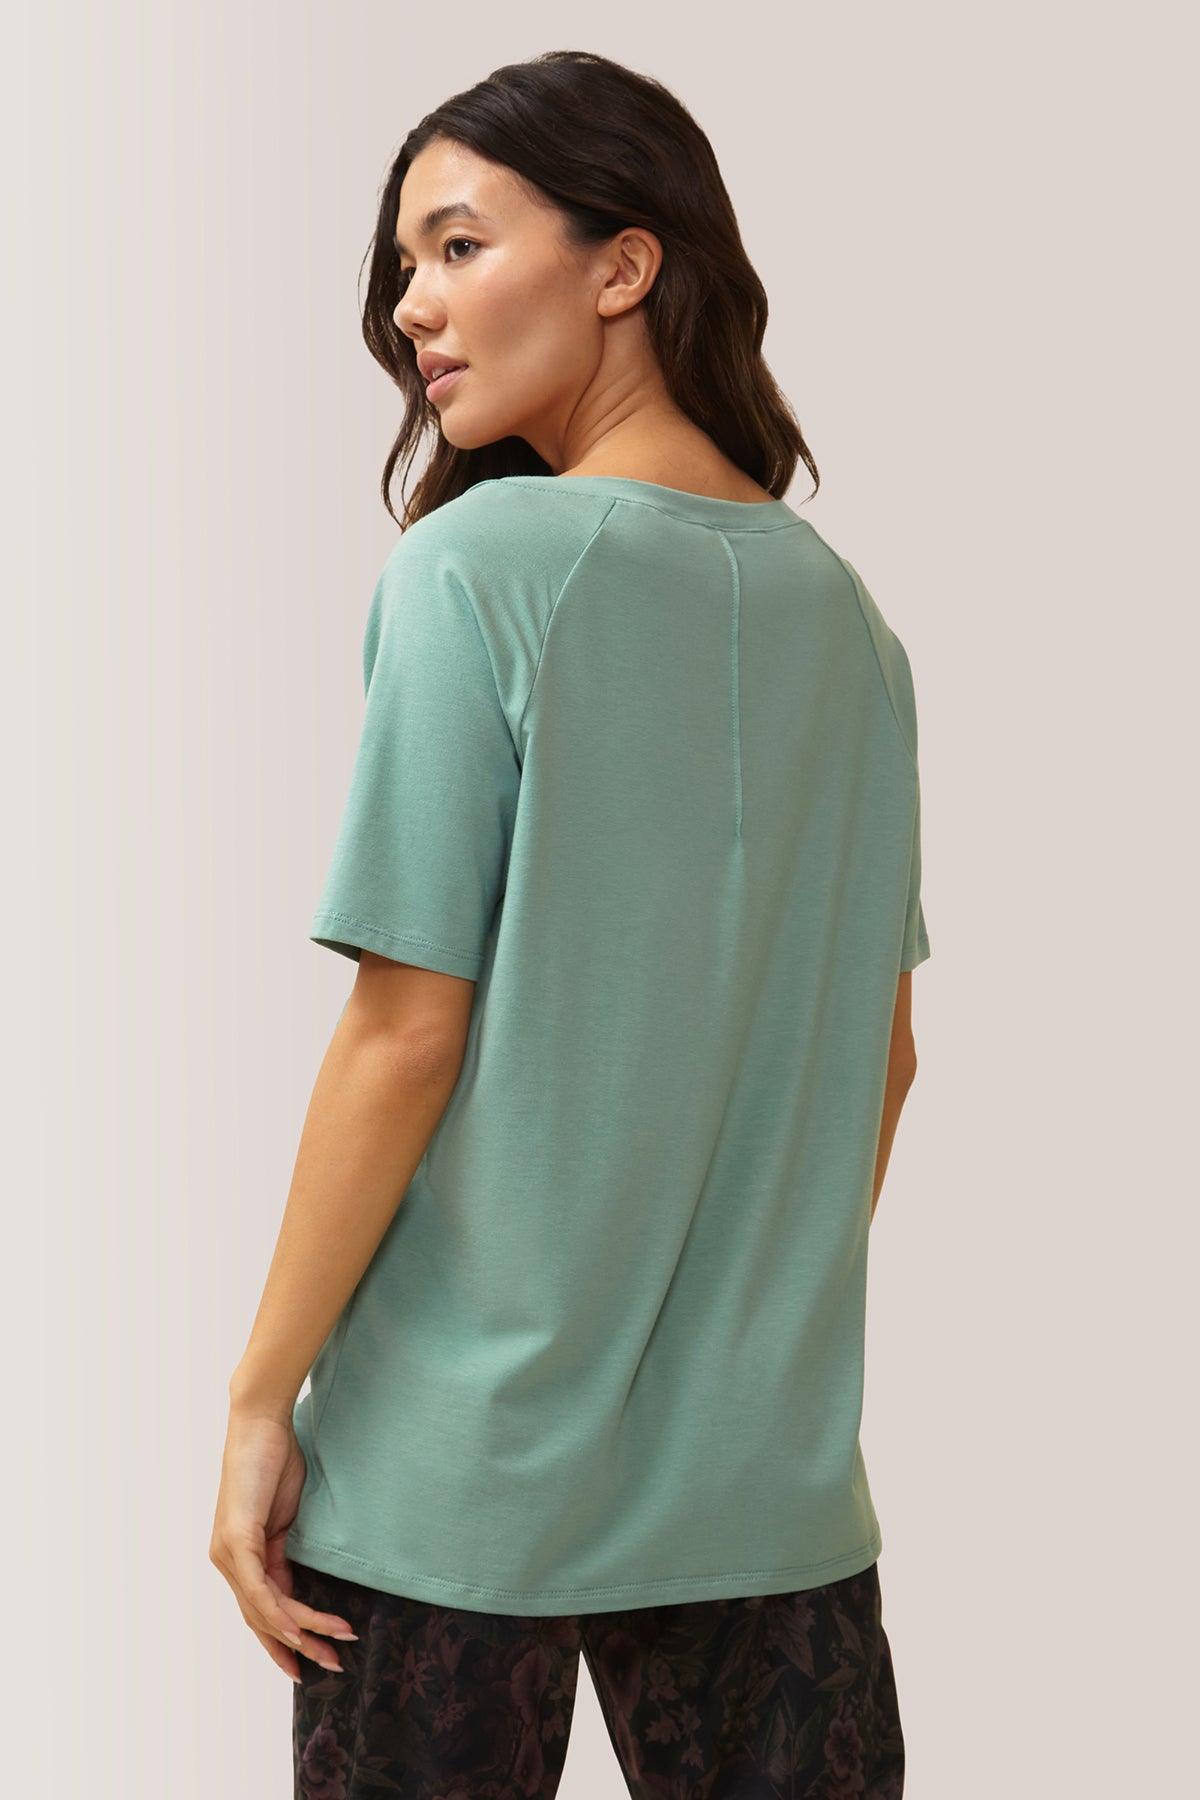 Femme vêtue du t-shirt blissful flow par Rose Boreal. / Women wearing the blissful flow t-shirt by Rose Boreal. - Malachite